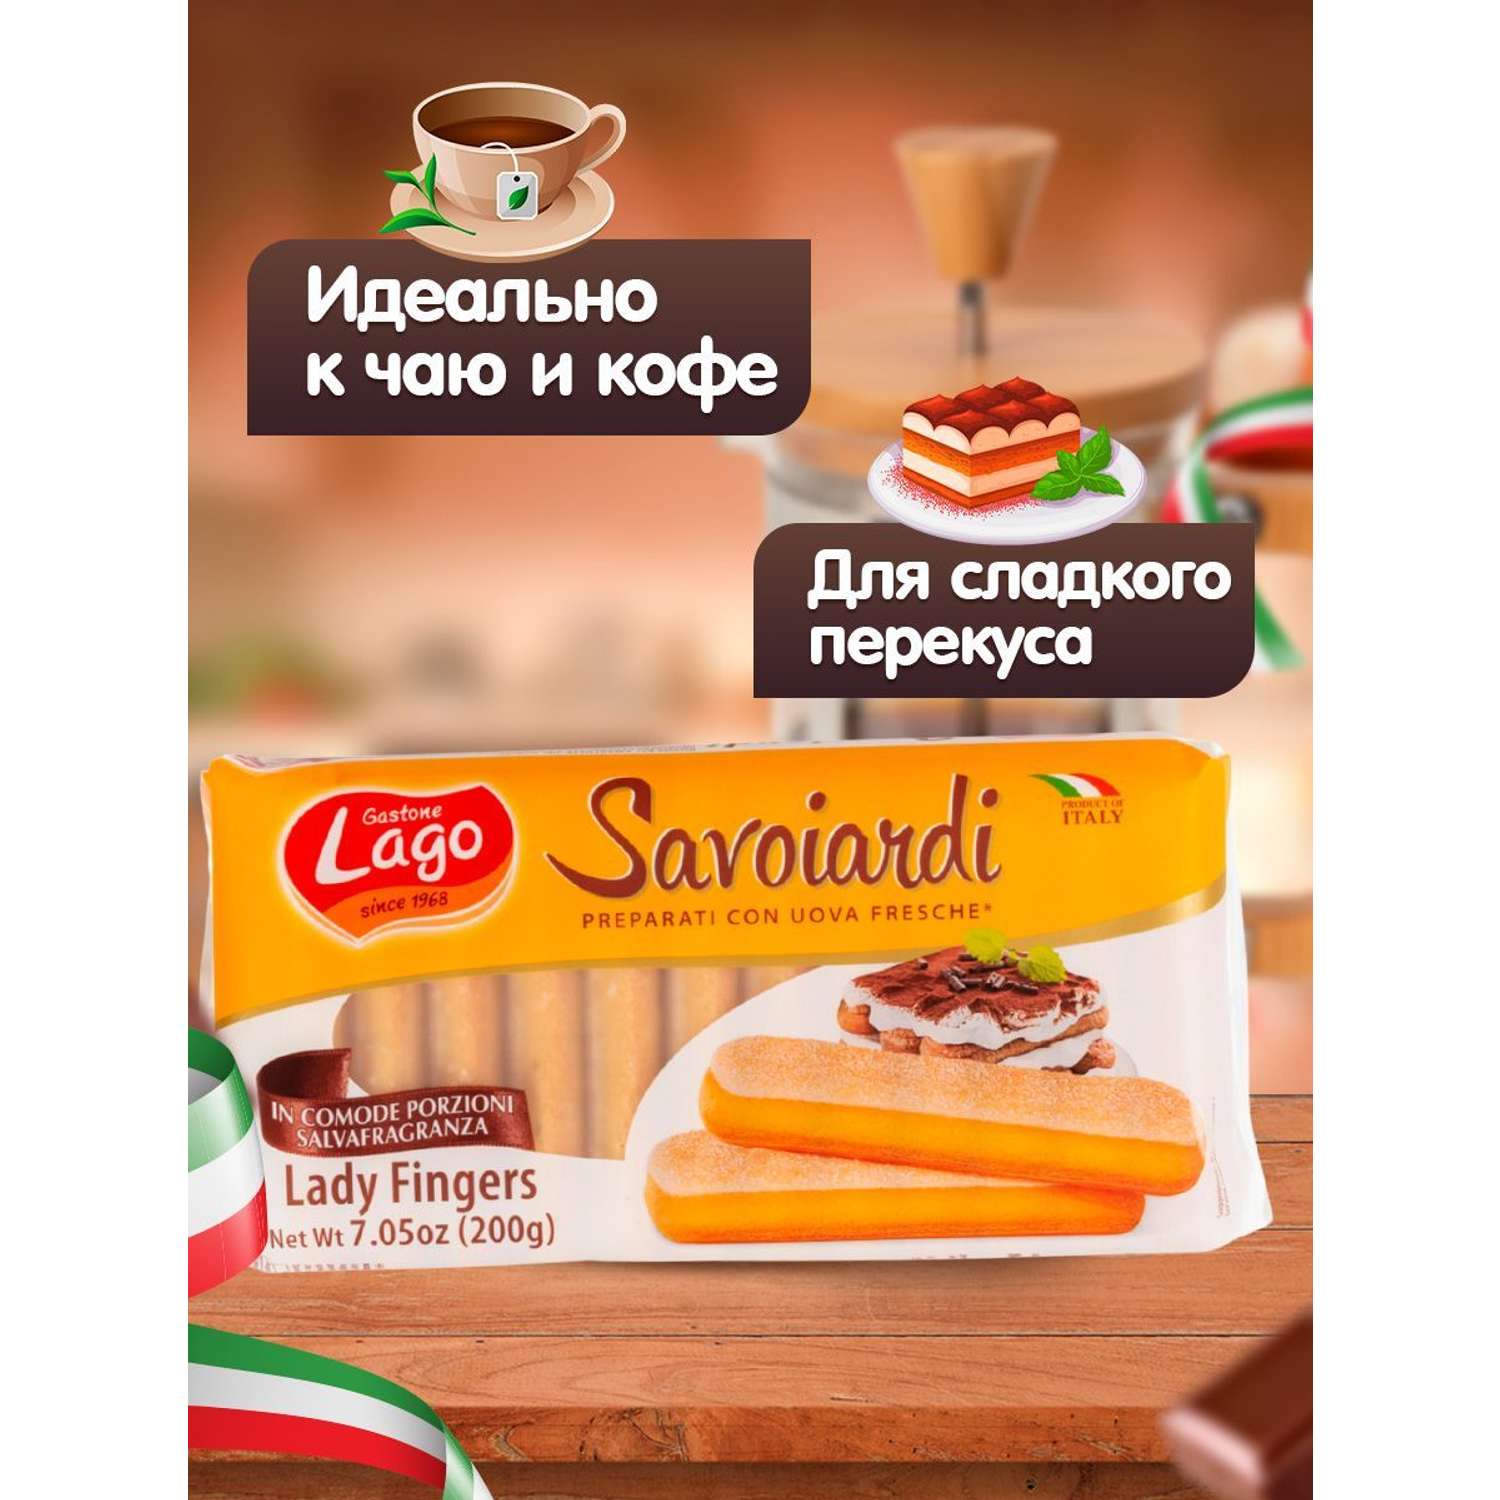 Печенье Савоярди Elledi Gastone Lago 3 уп по 200 г - фото 3